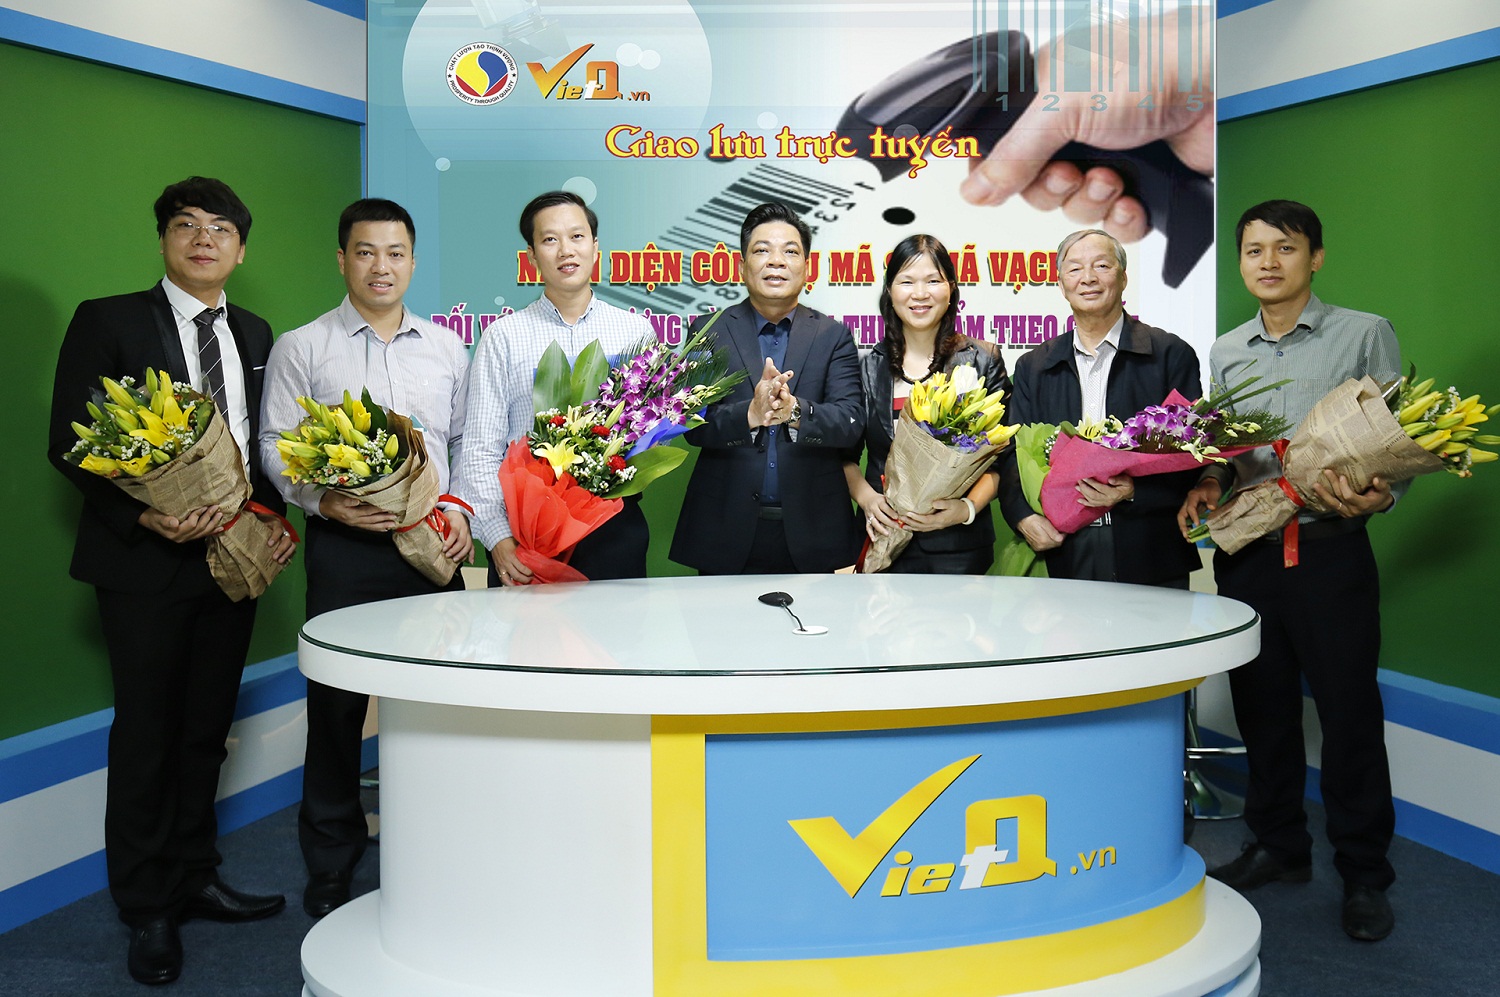 Tổng Biên tập Trần Văn Dư tặng hoa cho các khách mời tham gia Chương trình Giao lưu trực tuyến